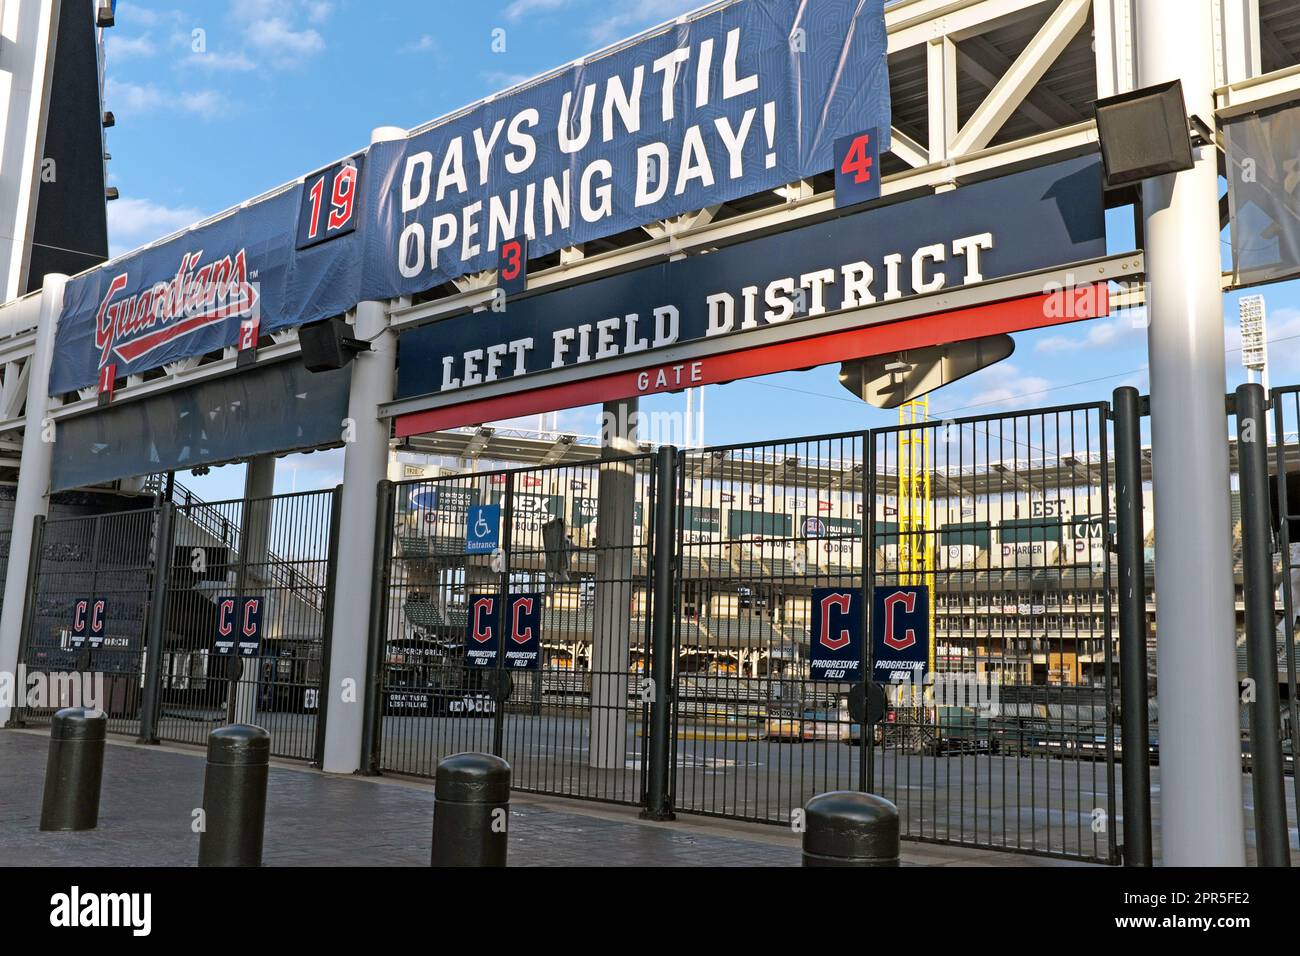 Il campo da baseball dei Guardians a Cleveland, Ohio, il 19 marzo 2023, con un banner sopra l'ingresso del distretto di campo sinistro che annuncia 19 giorni fino al giorno di apertura. Foto Stock